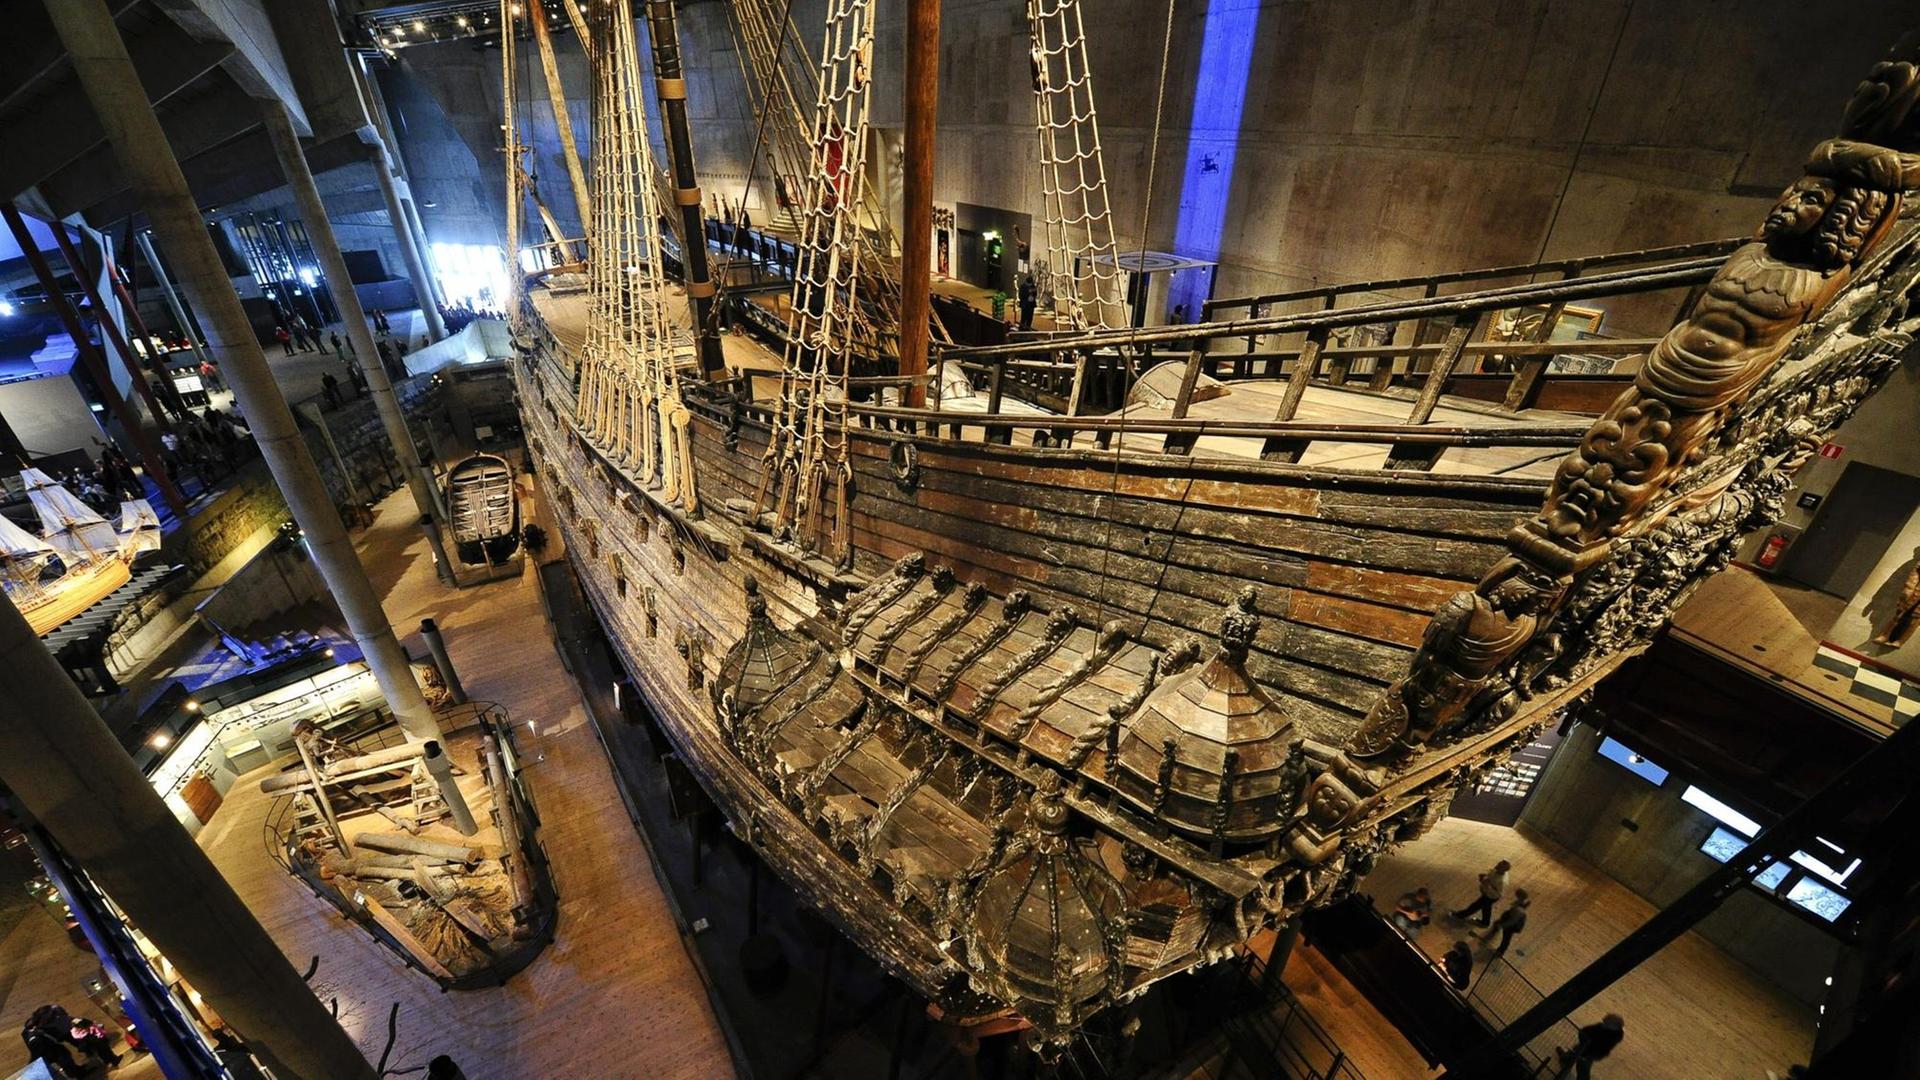 Die Galeone "Vasa" in der Ausstellungshalle in Stockholm. Das Schiff sank 1628 bei seiner Jungfernfahrt.